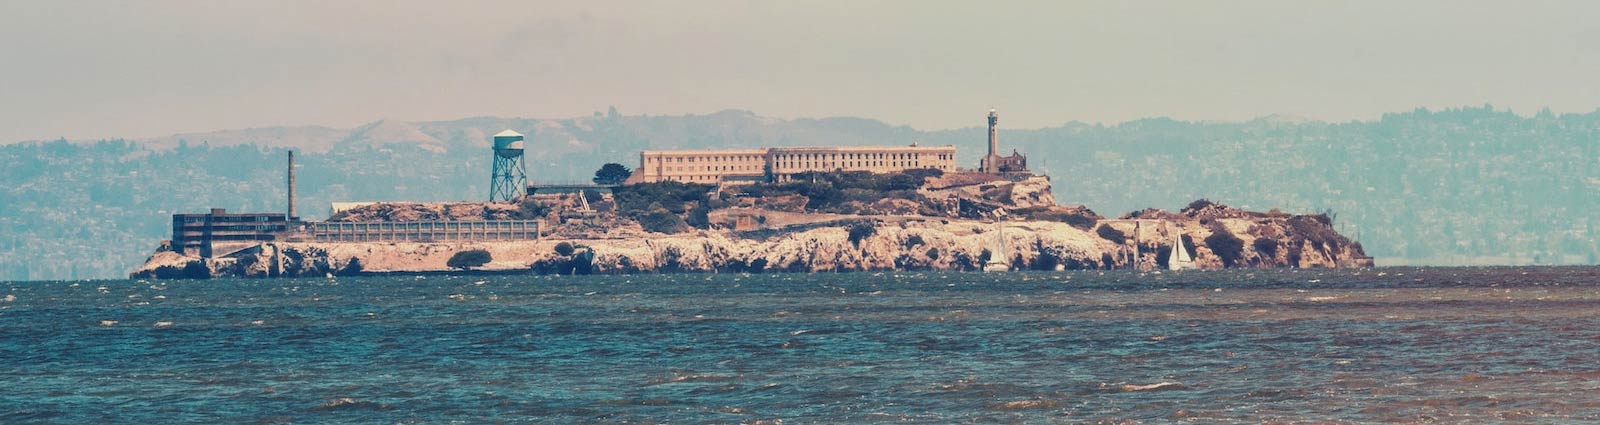 Alcatraz from the shore